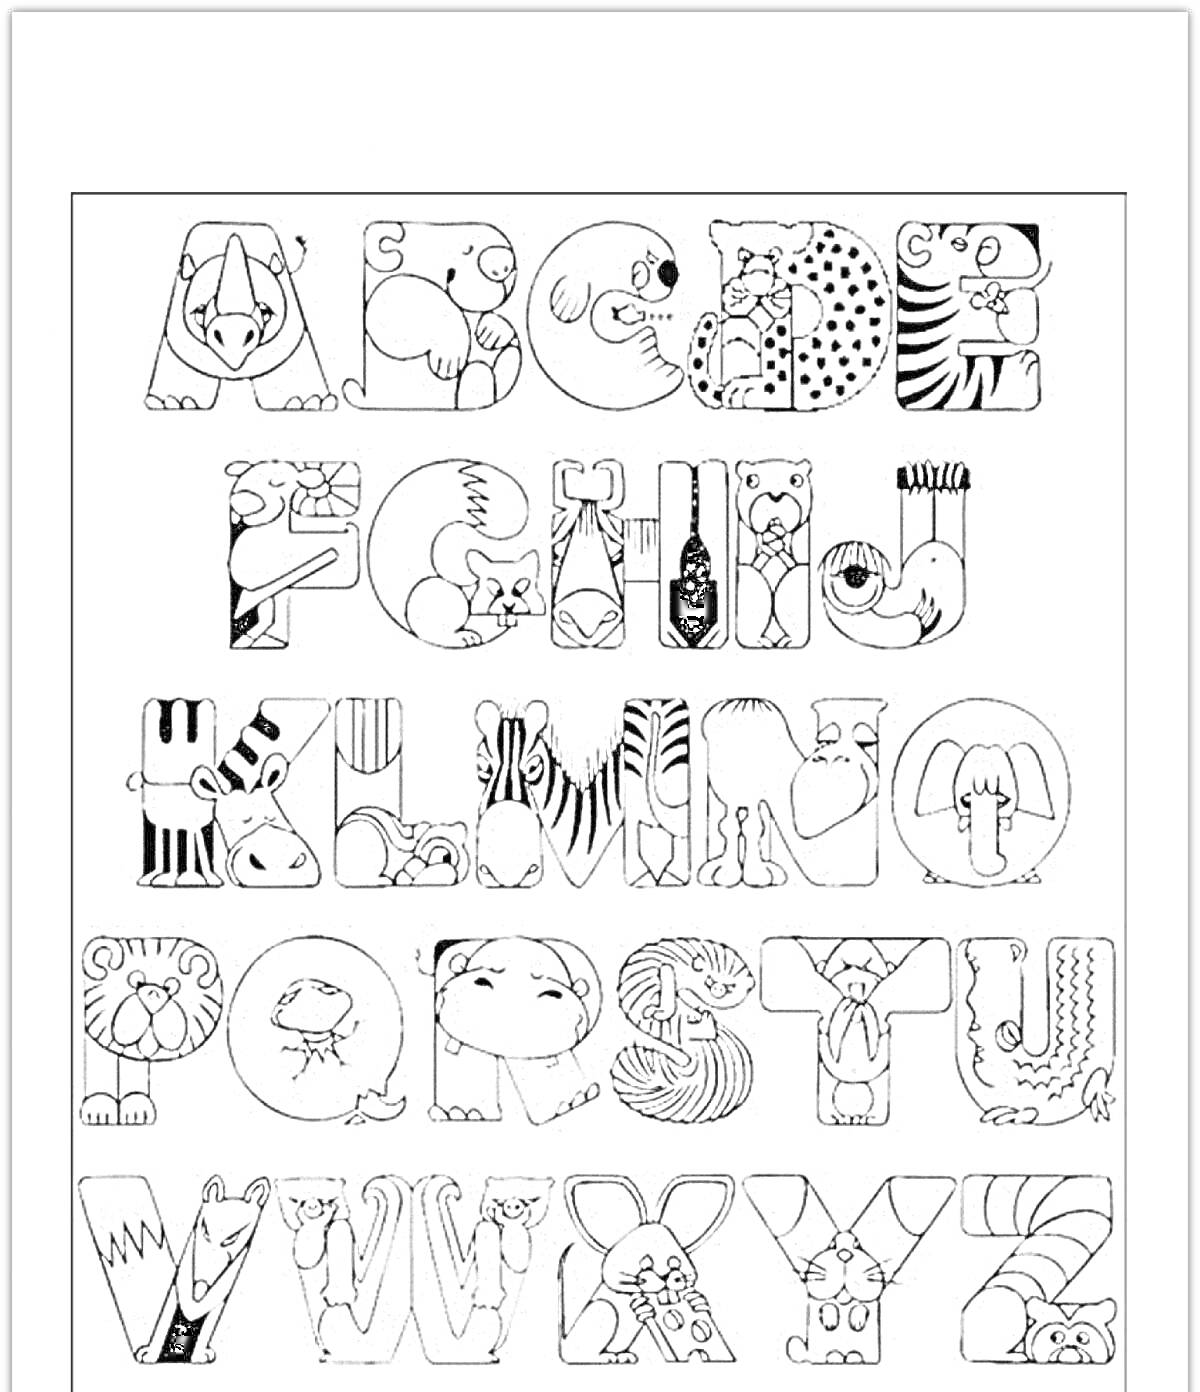 Алфавит с животными; в каждой букве спрятано изображение животных - всё от аллигатора до зебра.